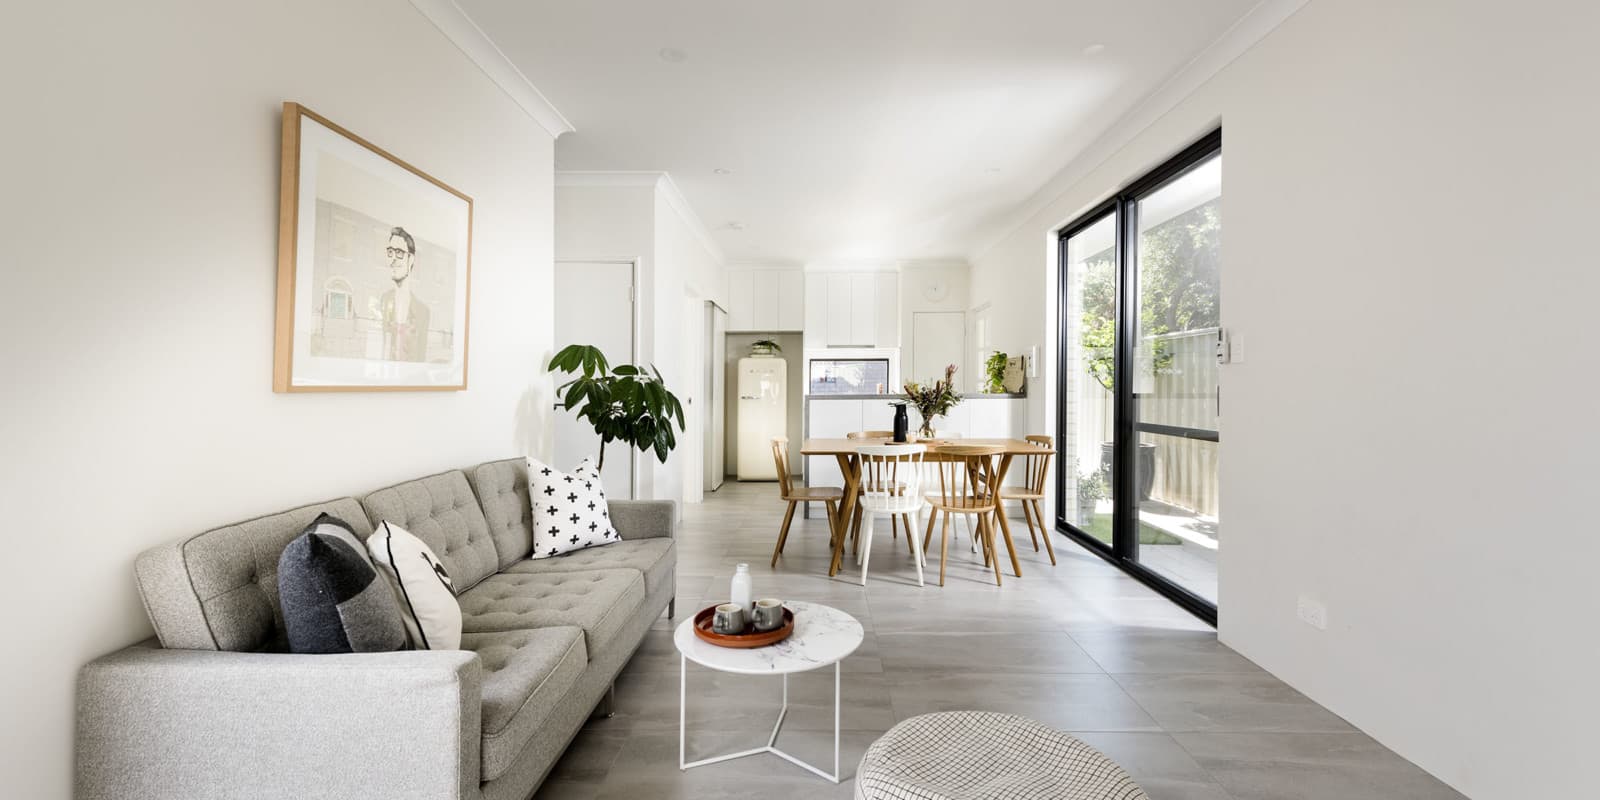 Granny Flat Design Build Dale Alcock Home Improvement Perth